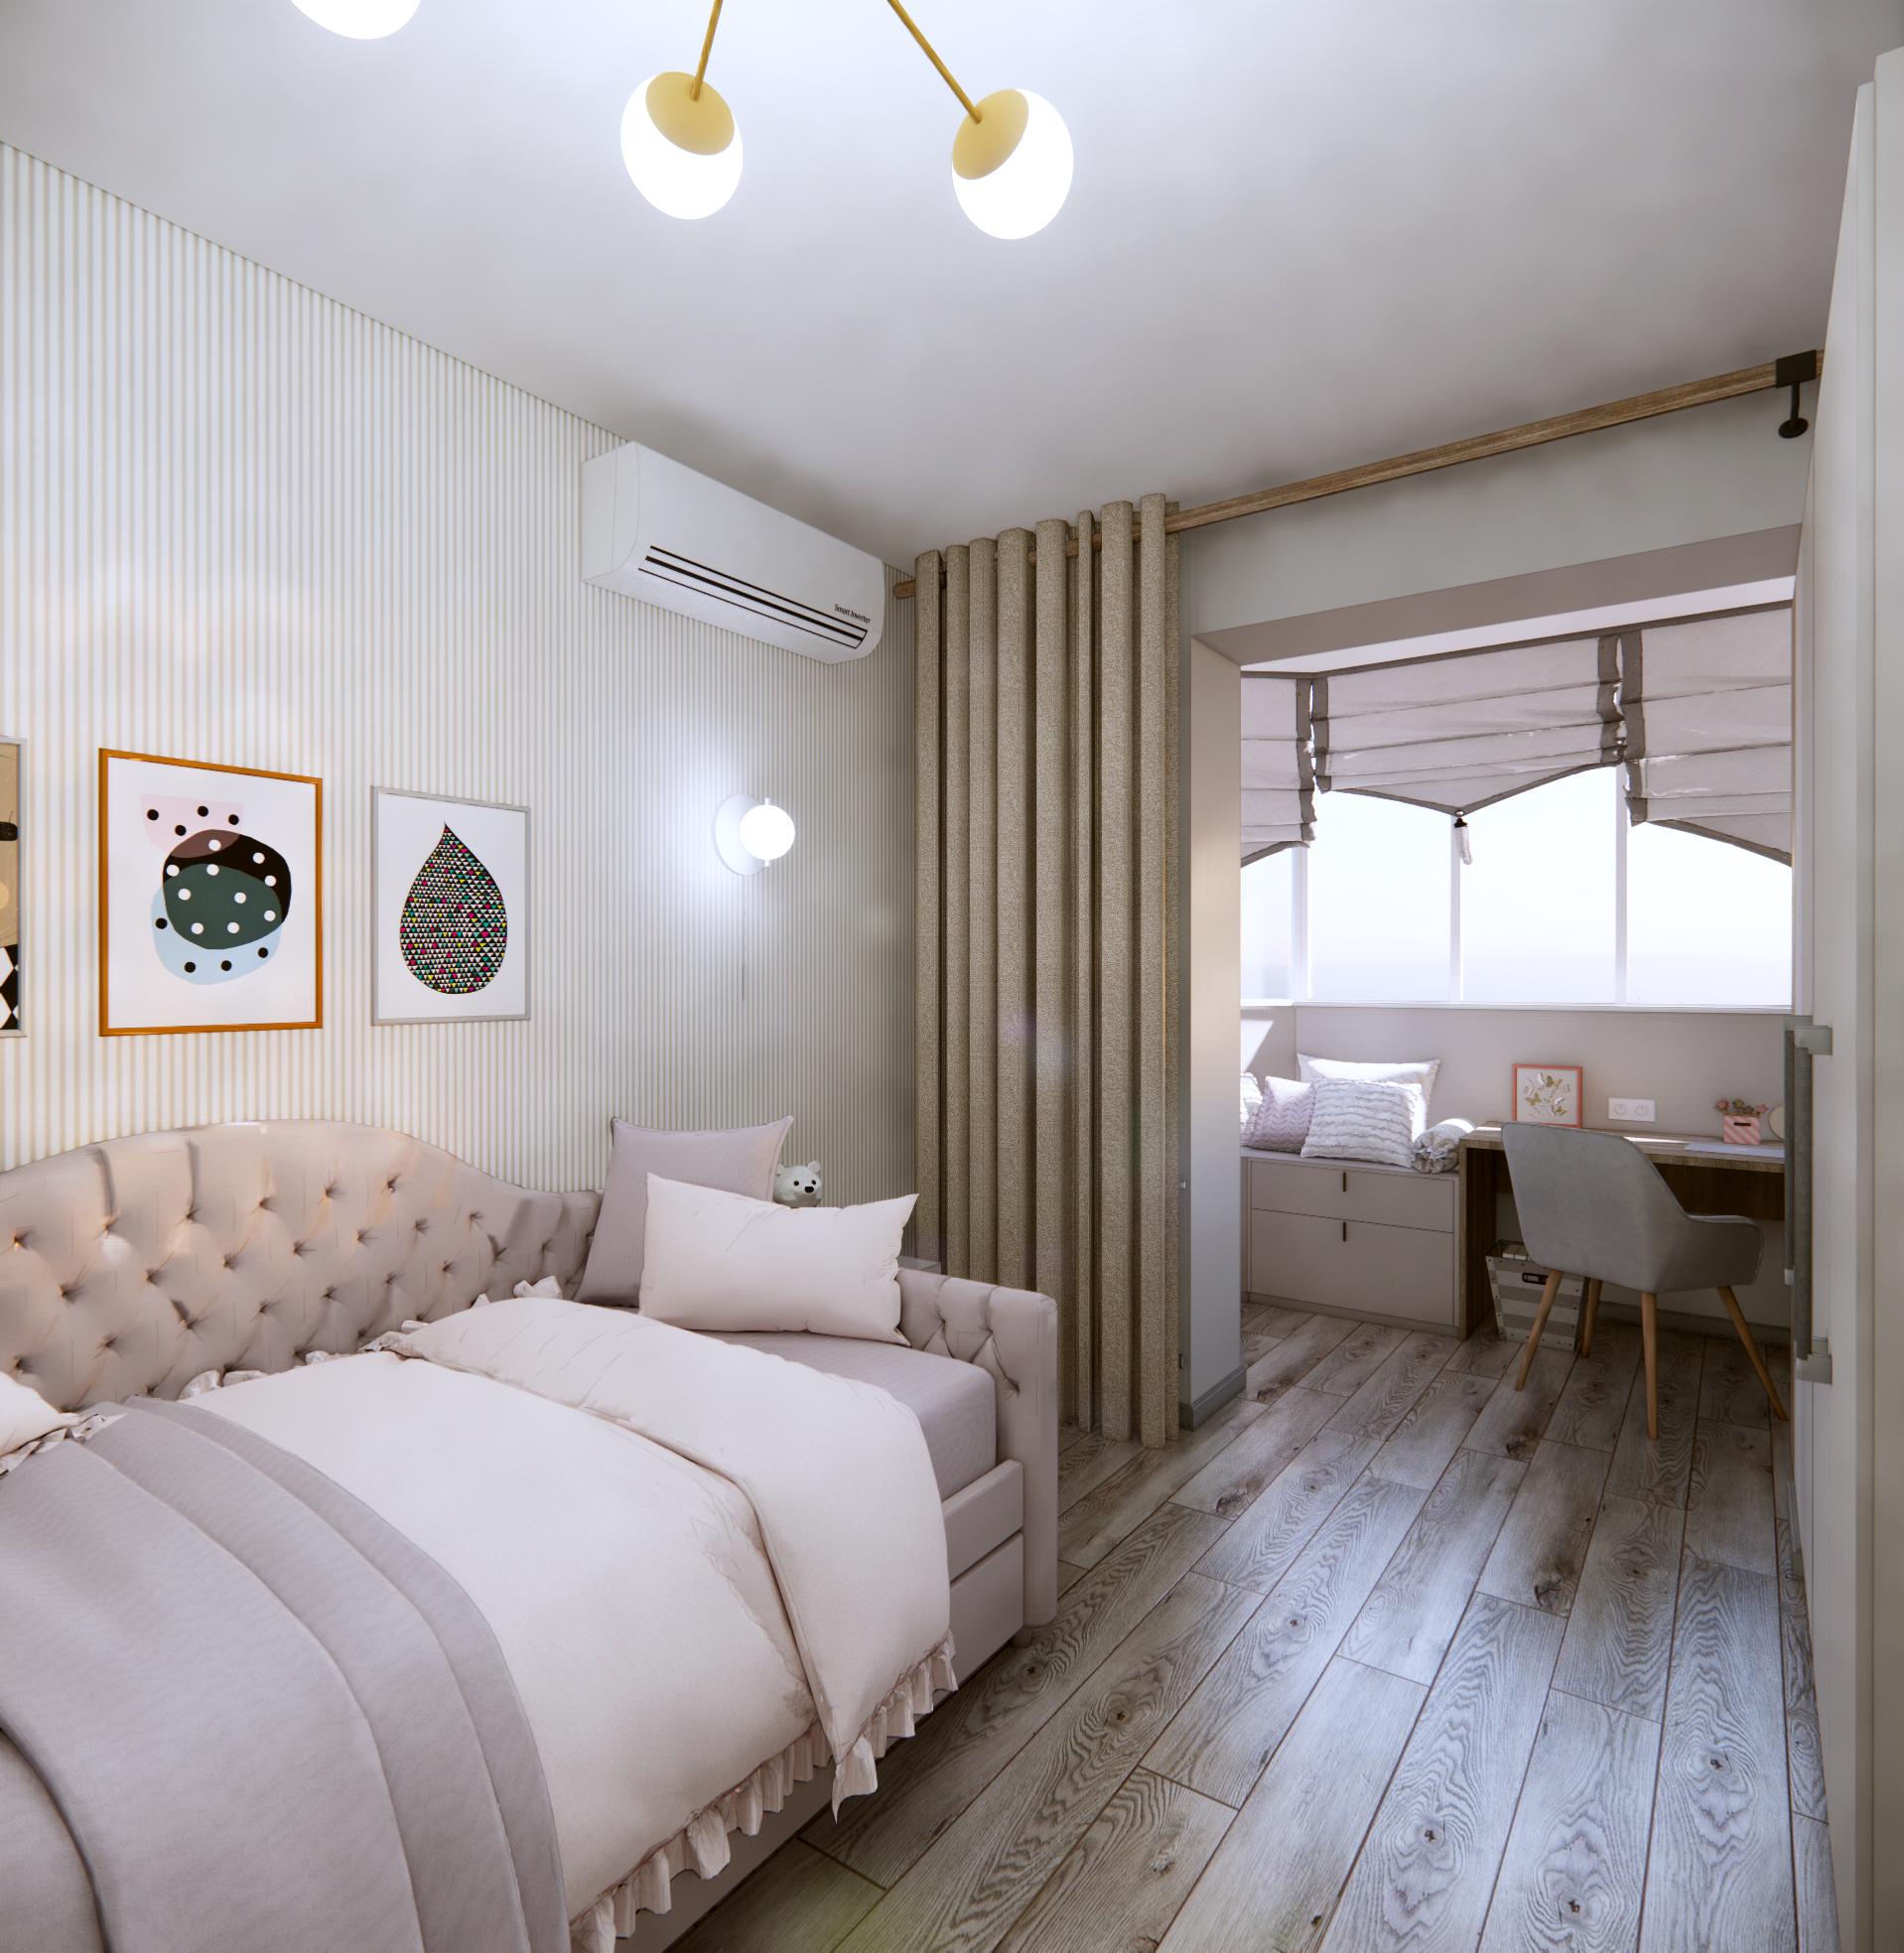 Интерьер спальни c рабочим местом, рейками с подсветкой, подсветкой светодиодной и светильниками над кроватью